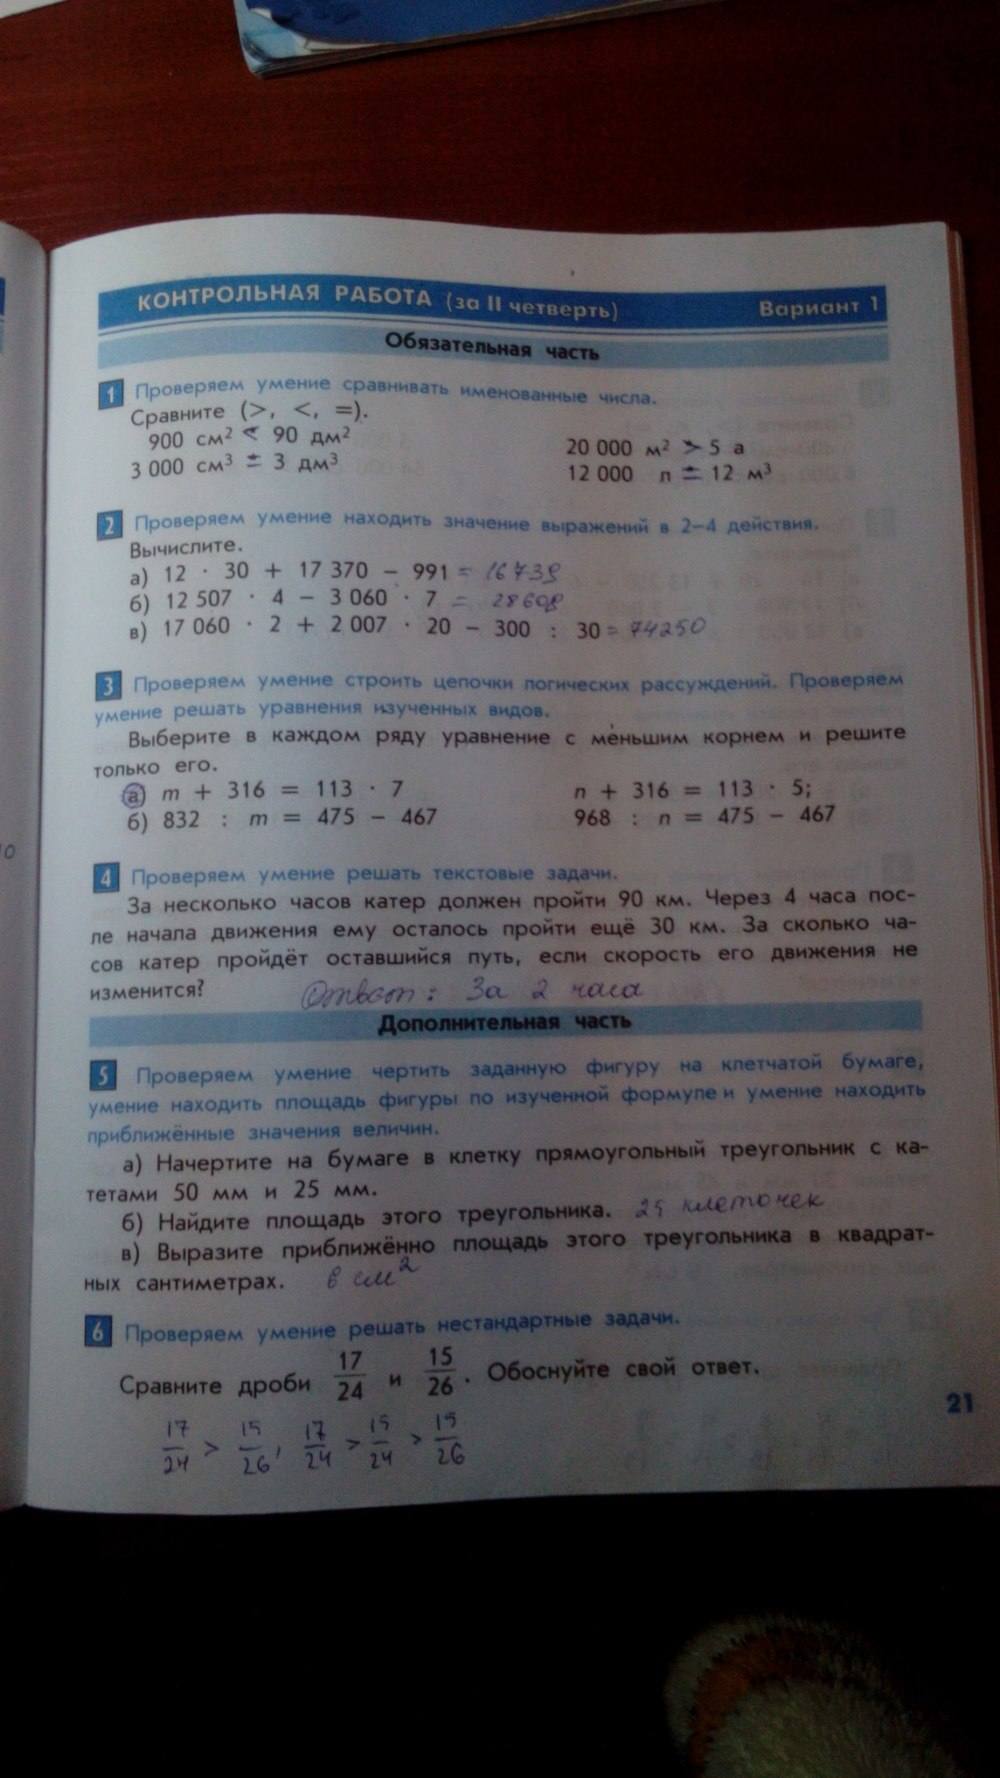 Тесты и контрольные работы, 4 класс, Козлова, Рубин, 2011, задание: стр. 21